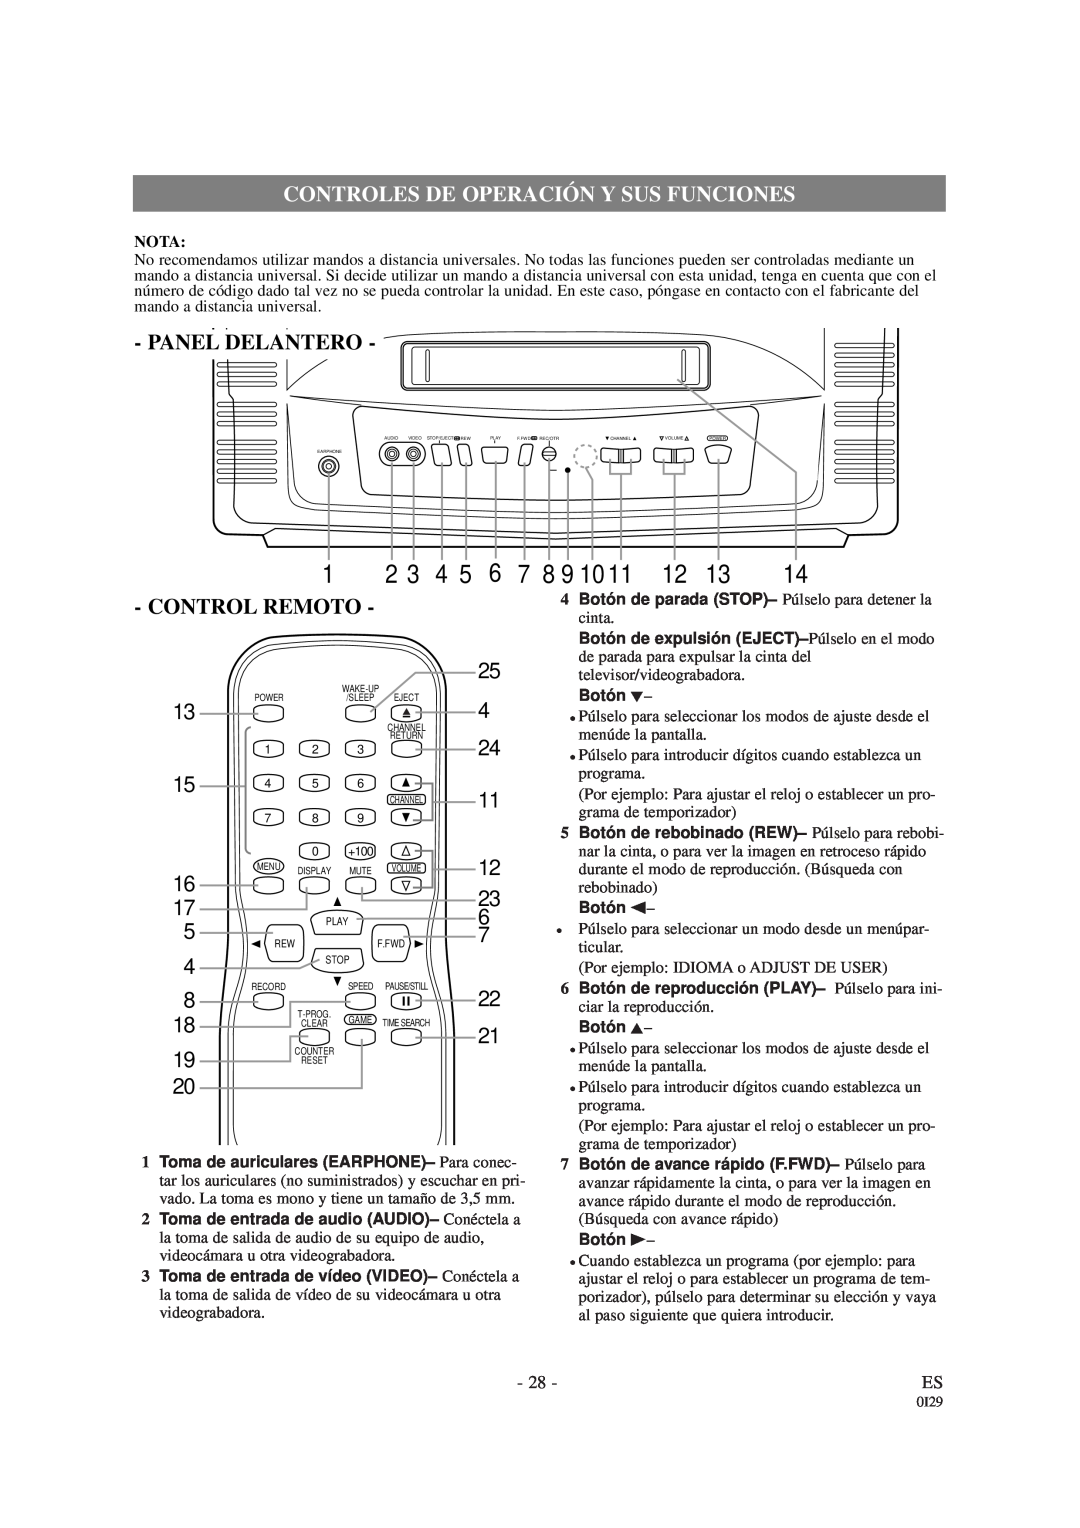 Symphonic WF-13C2 owner manual Controles De Operación Y Sus Funciones, Panel Delantero, Control Remoto, 7 8 9 10, Nota 